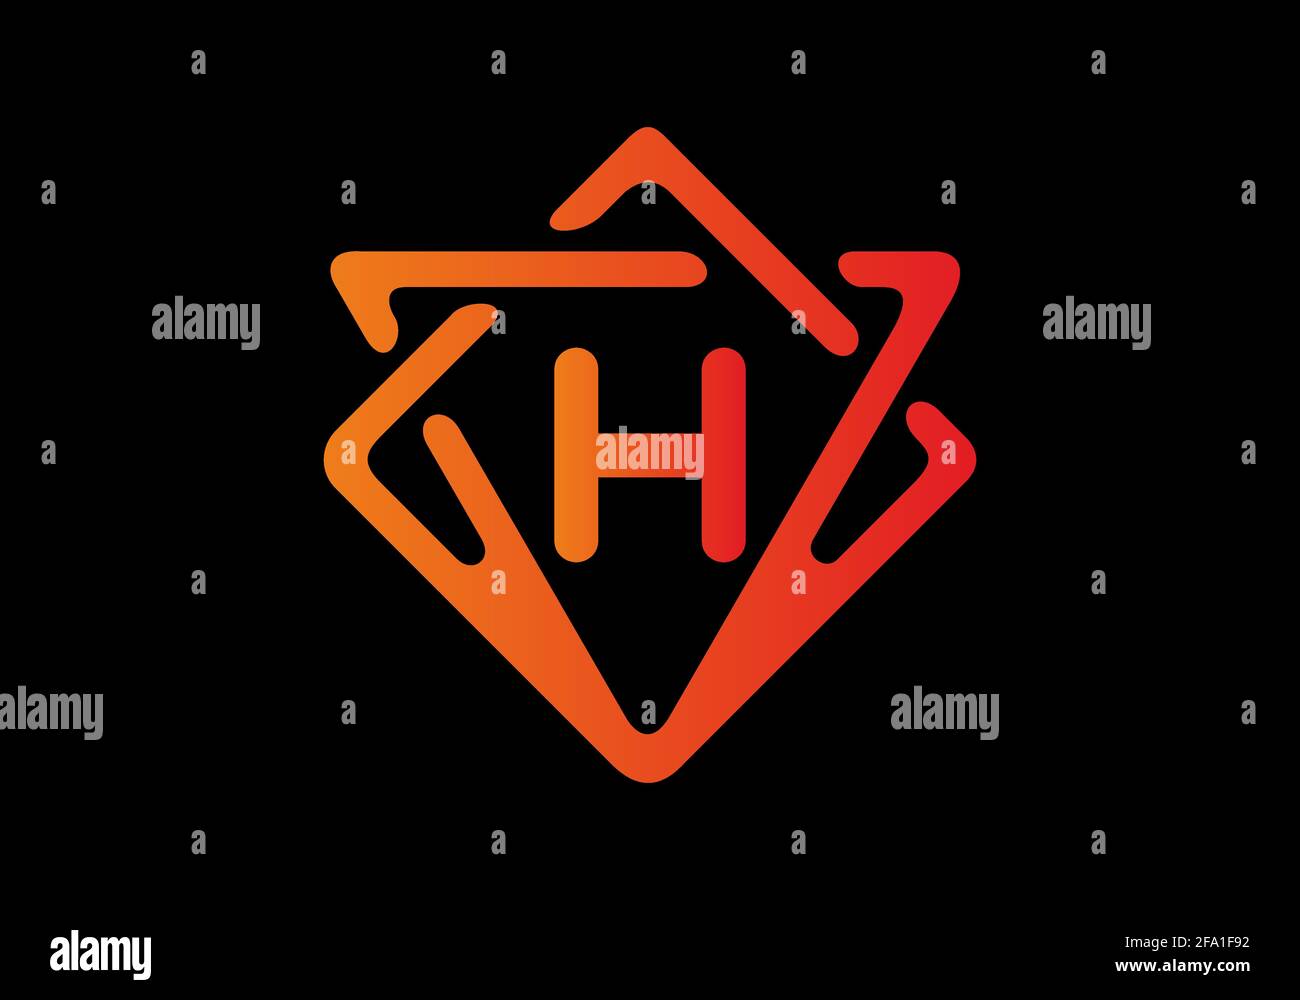 Dégradé de couleur rouge orange de la lettre H initiale Illustration de Vecteur